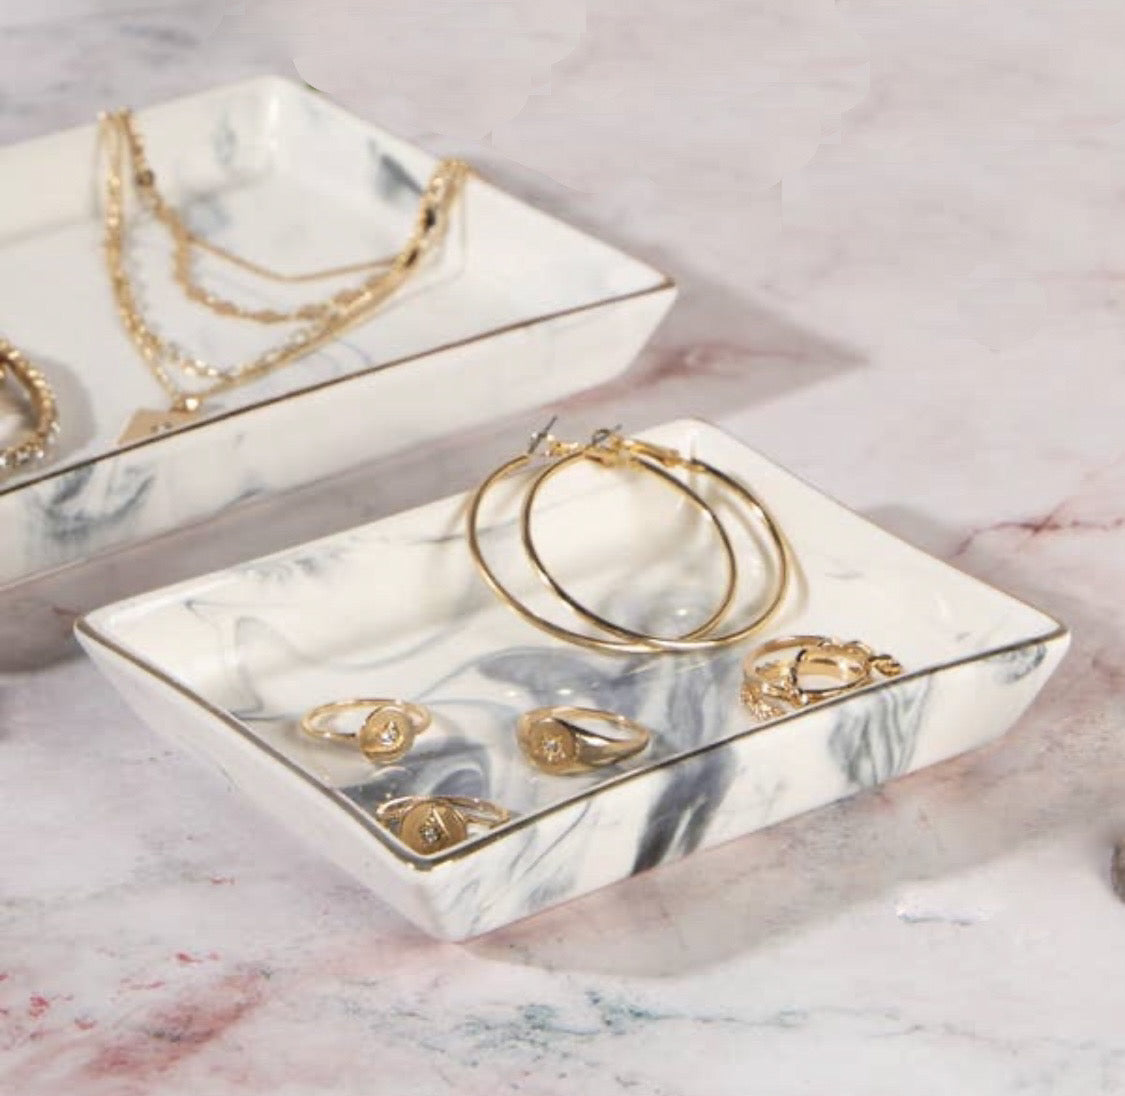 Lottie Jewellery trays